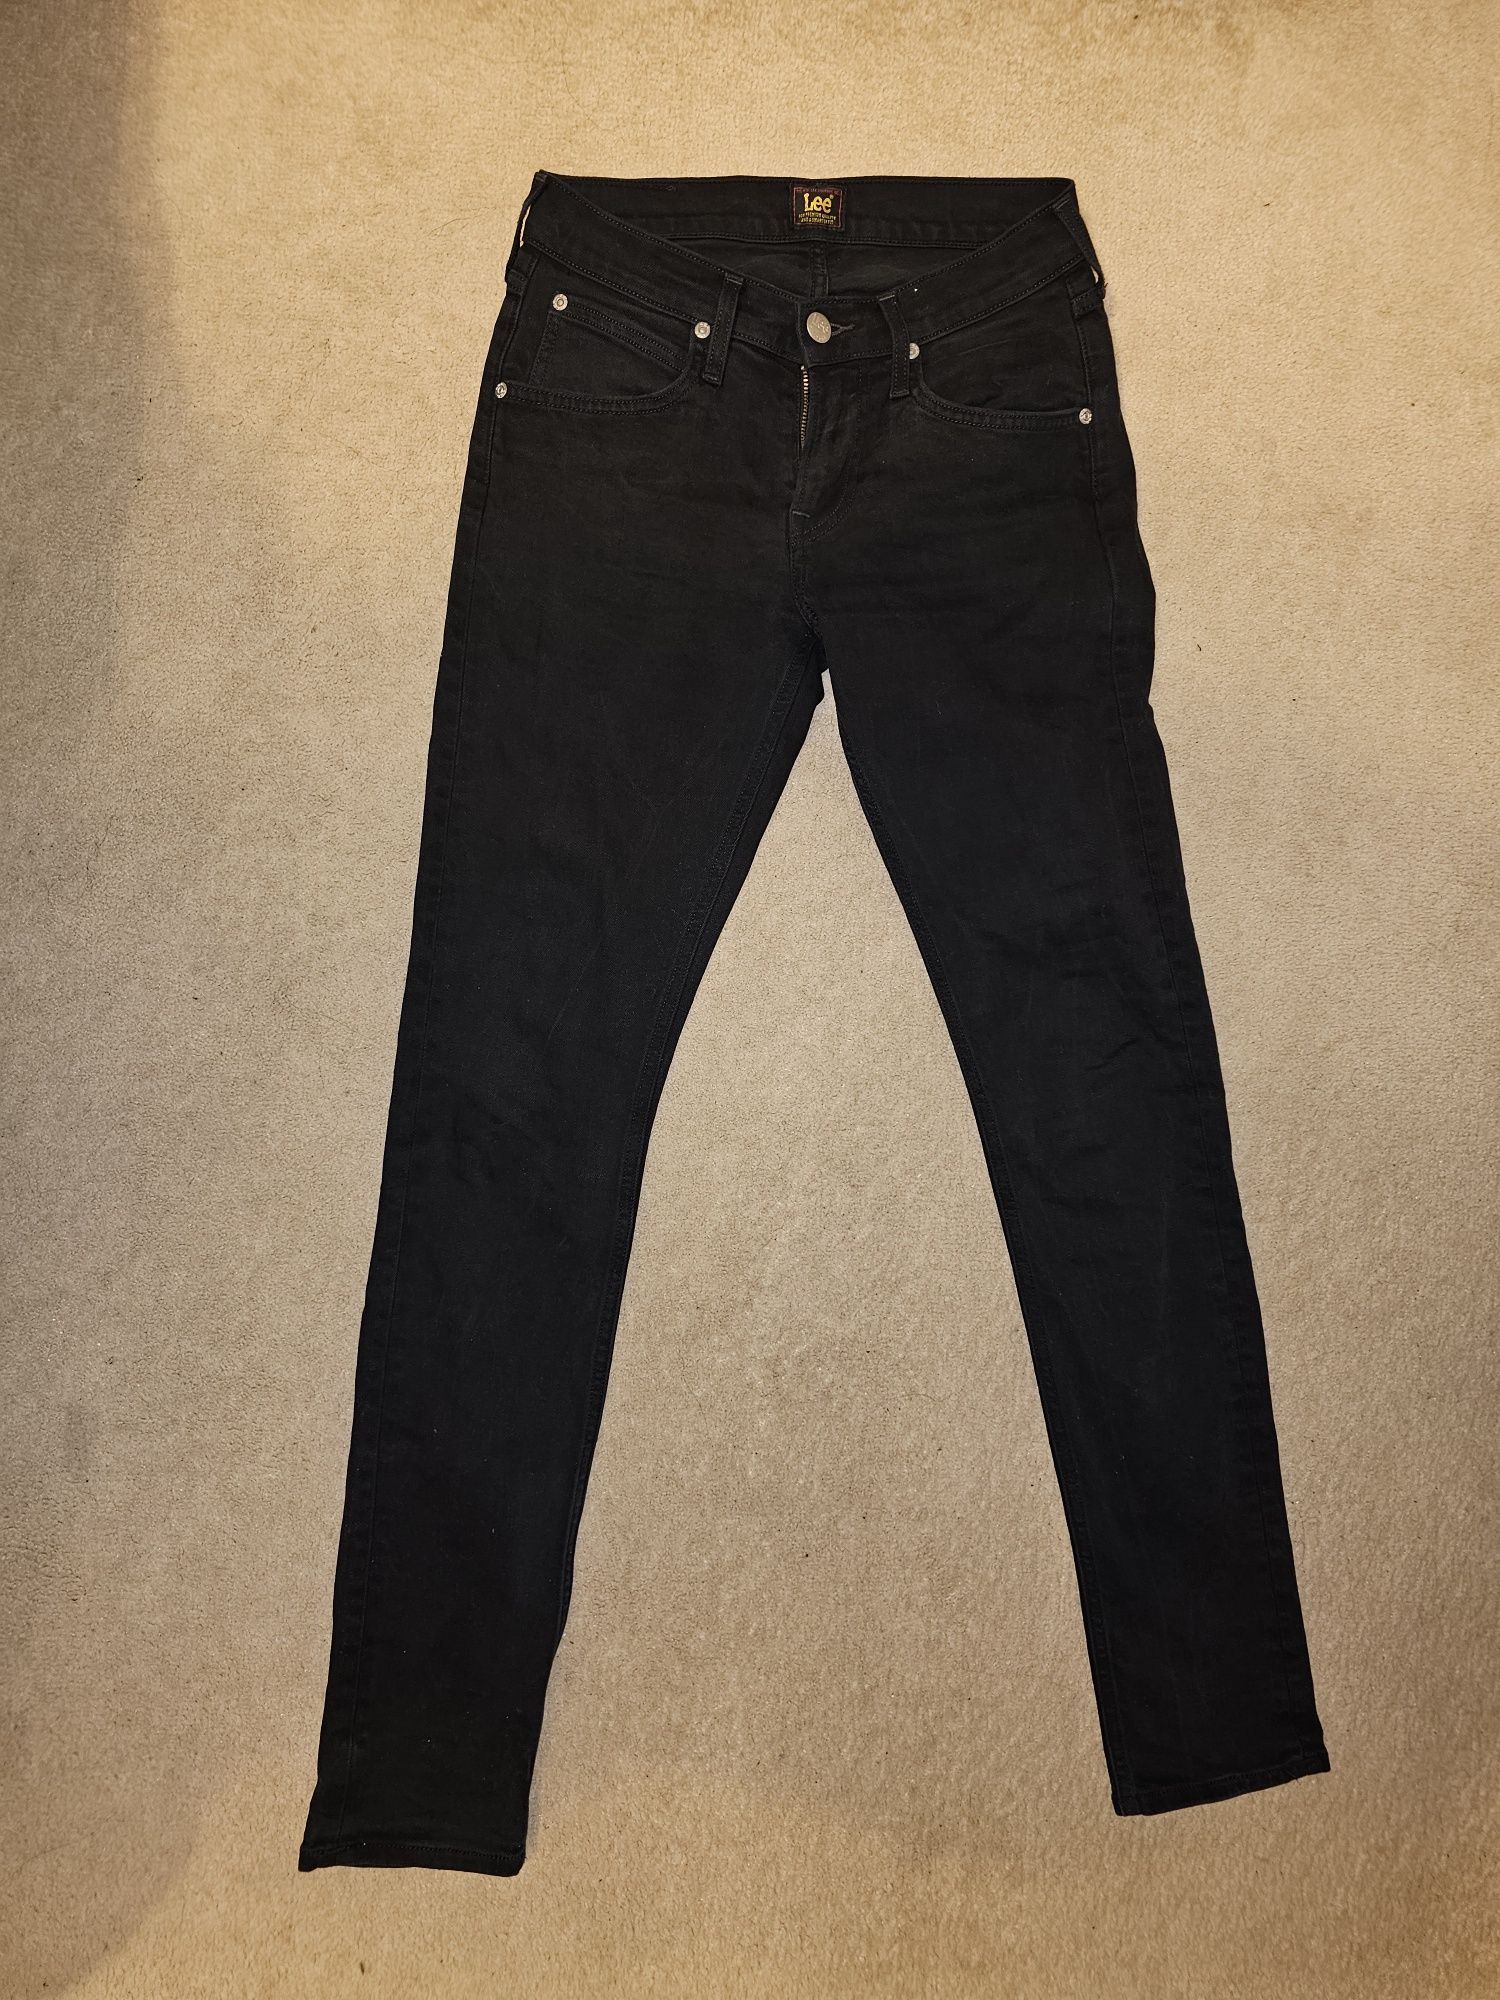 Jeans LEE luke W27 L32 na szczupłego wysokiego chłopaka